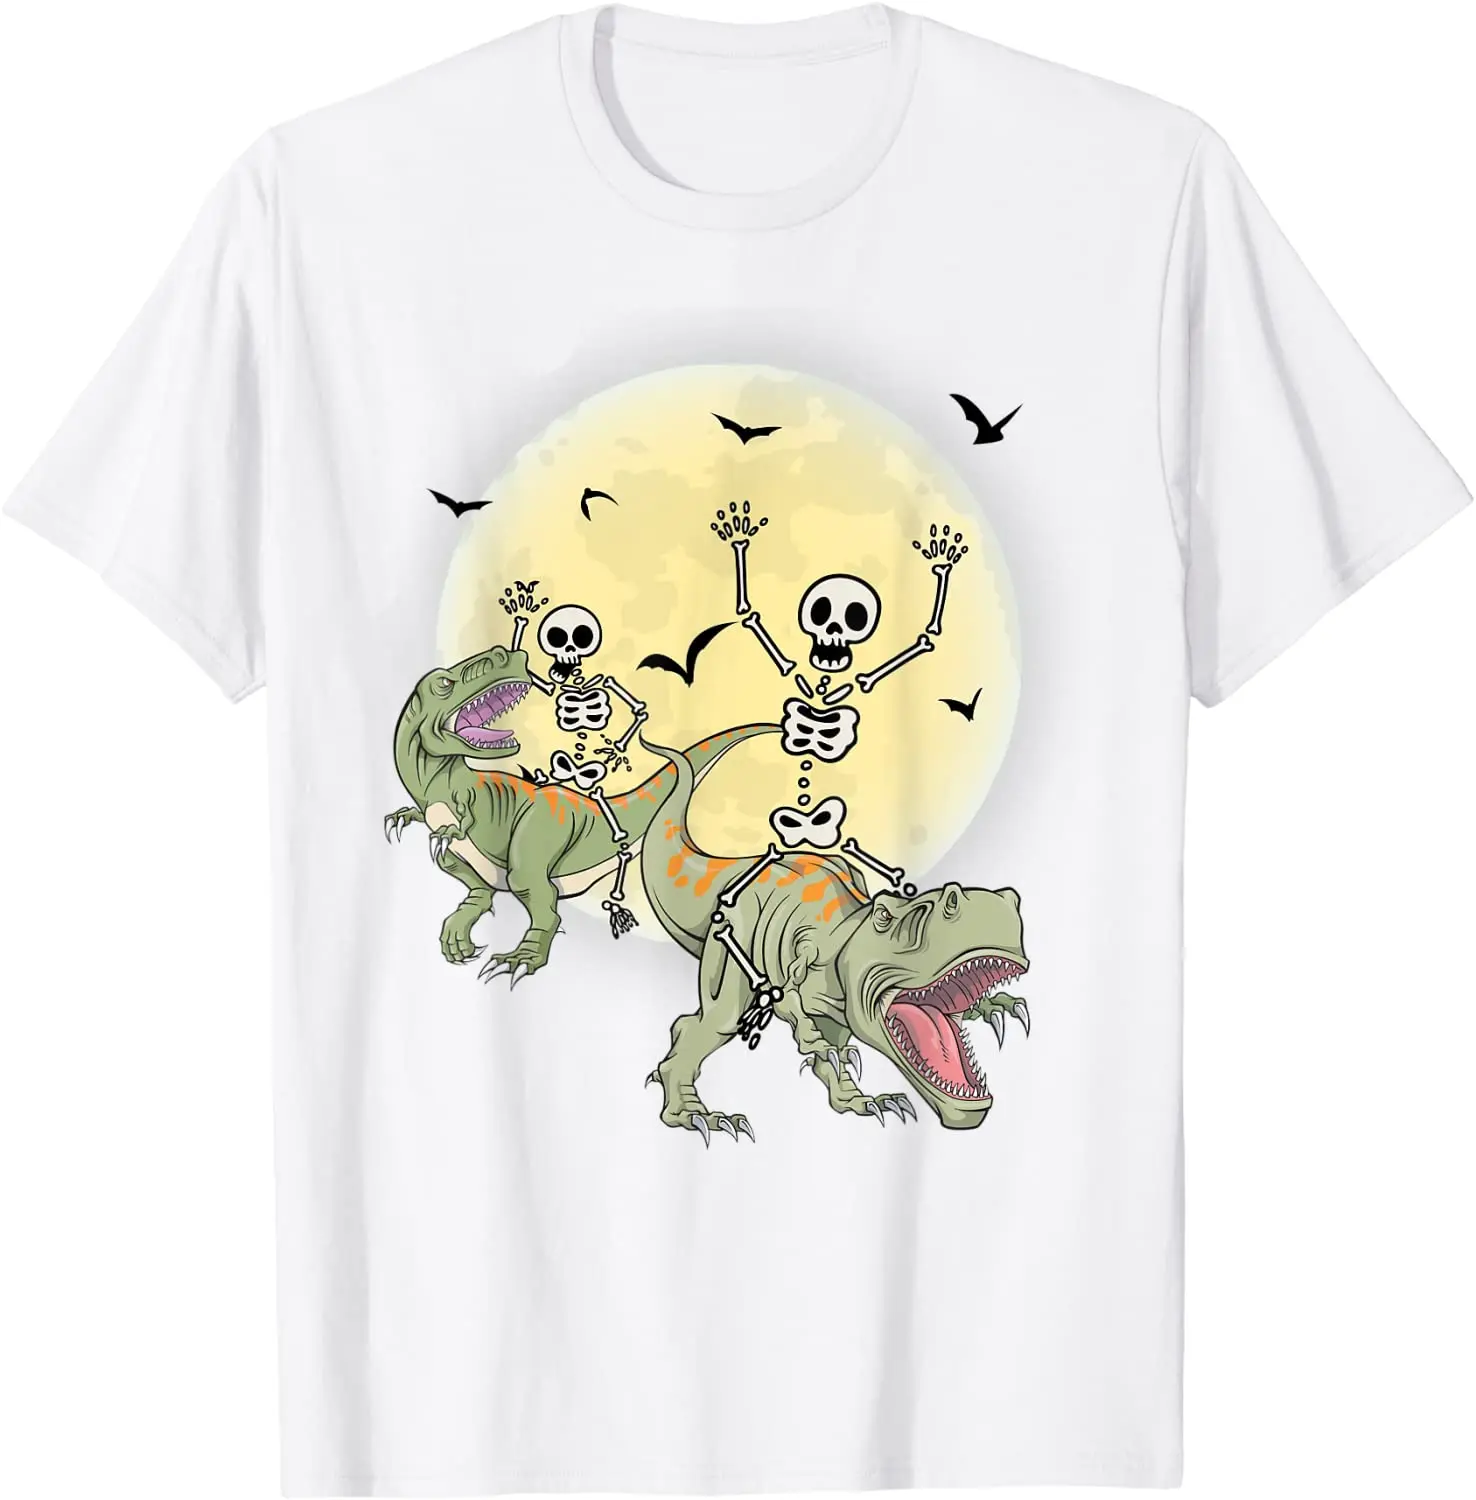 

Забавная футболка на Хэллоуин с изображением скелета динозавра T-Rex